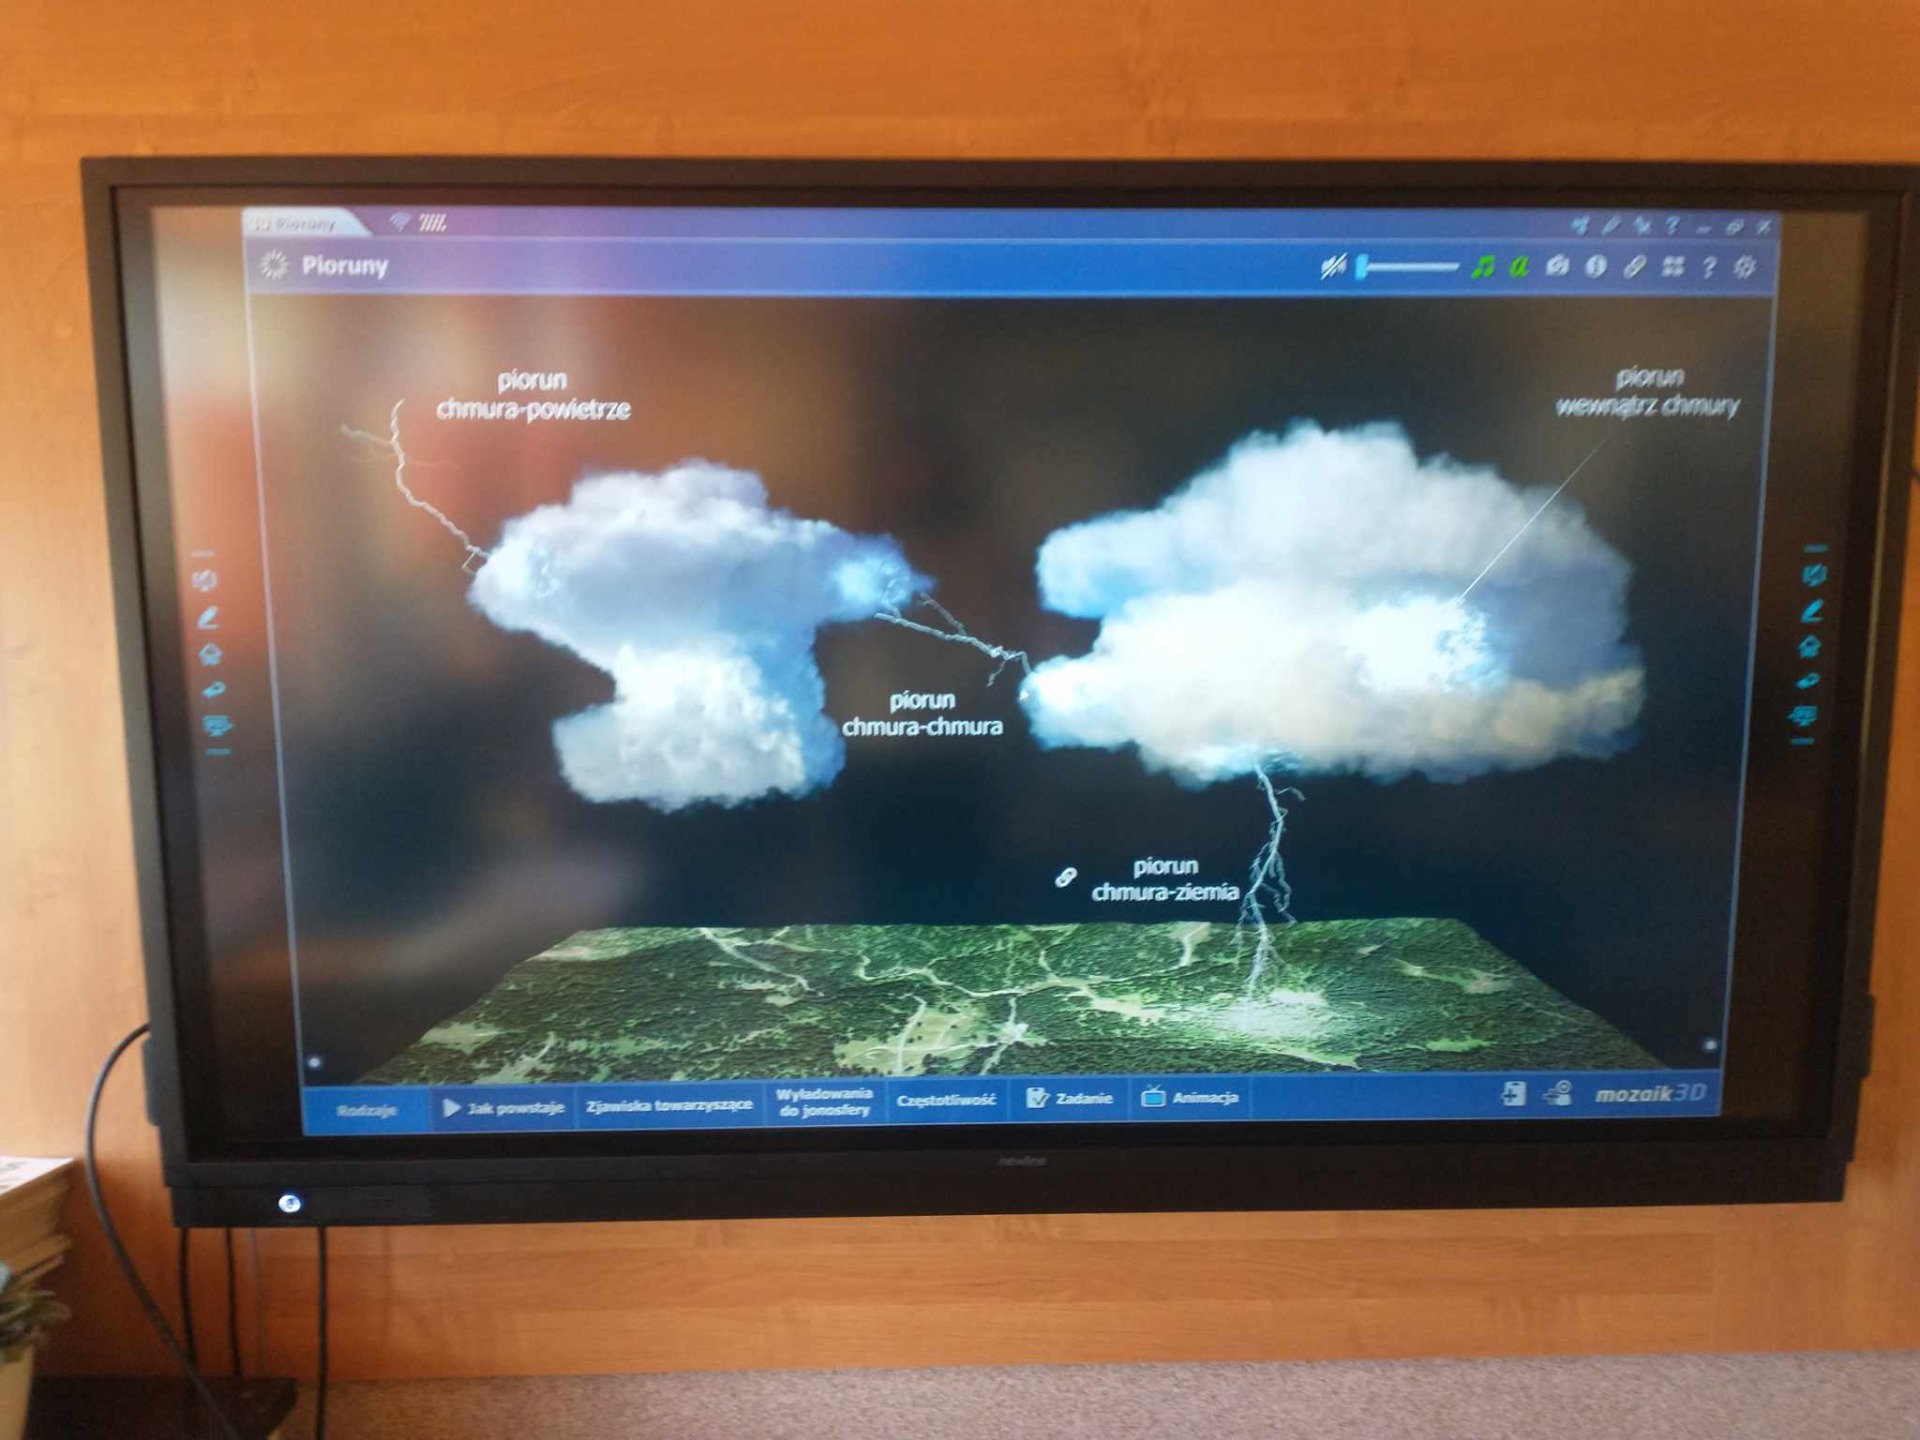 Działanie pioruna -   wyświetlane na monitorze interaktywnym